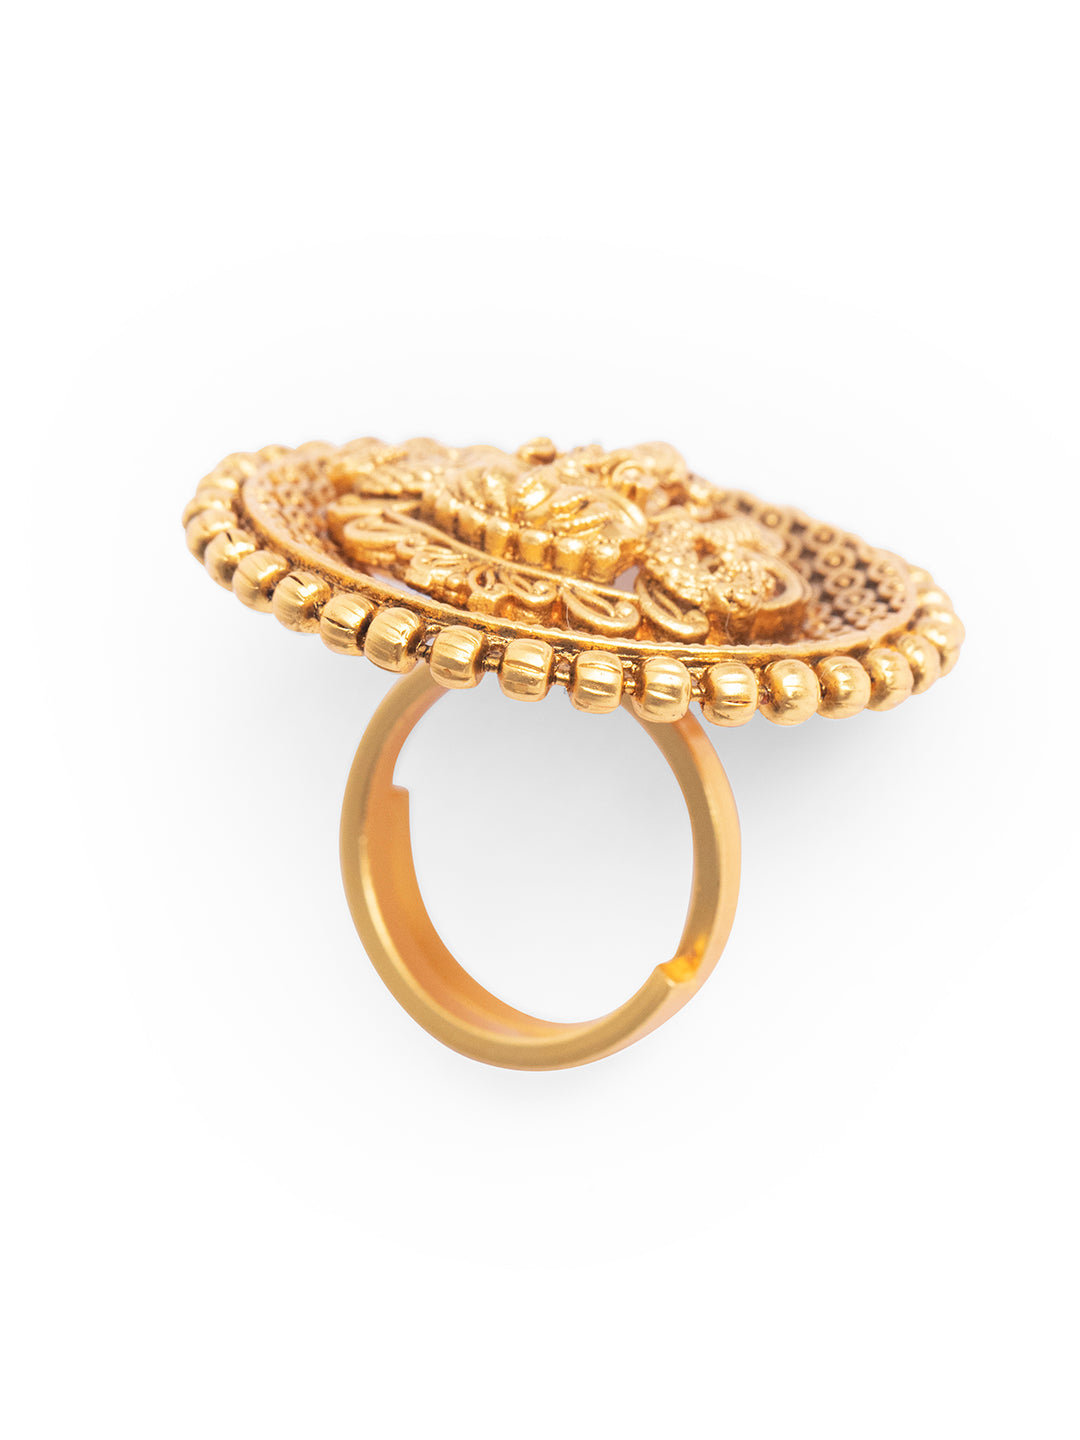 Priyaasi Gold Plated Goddess Laxmi Ring